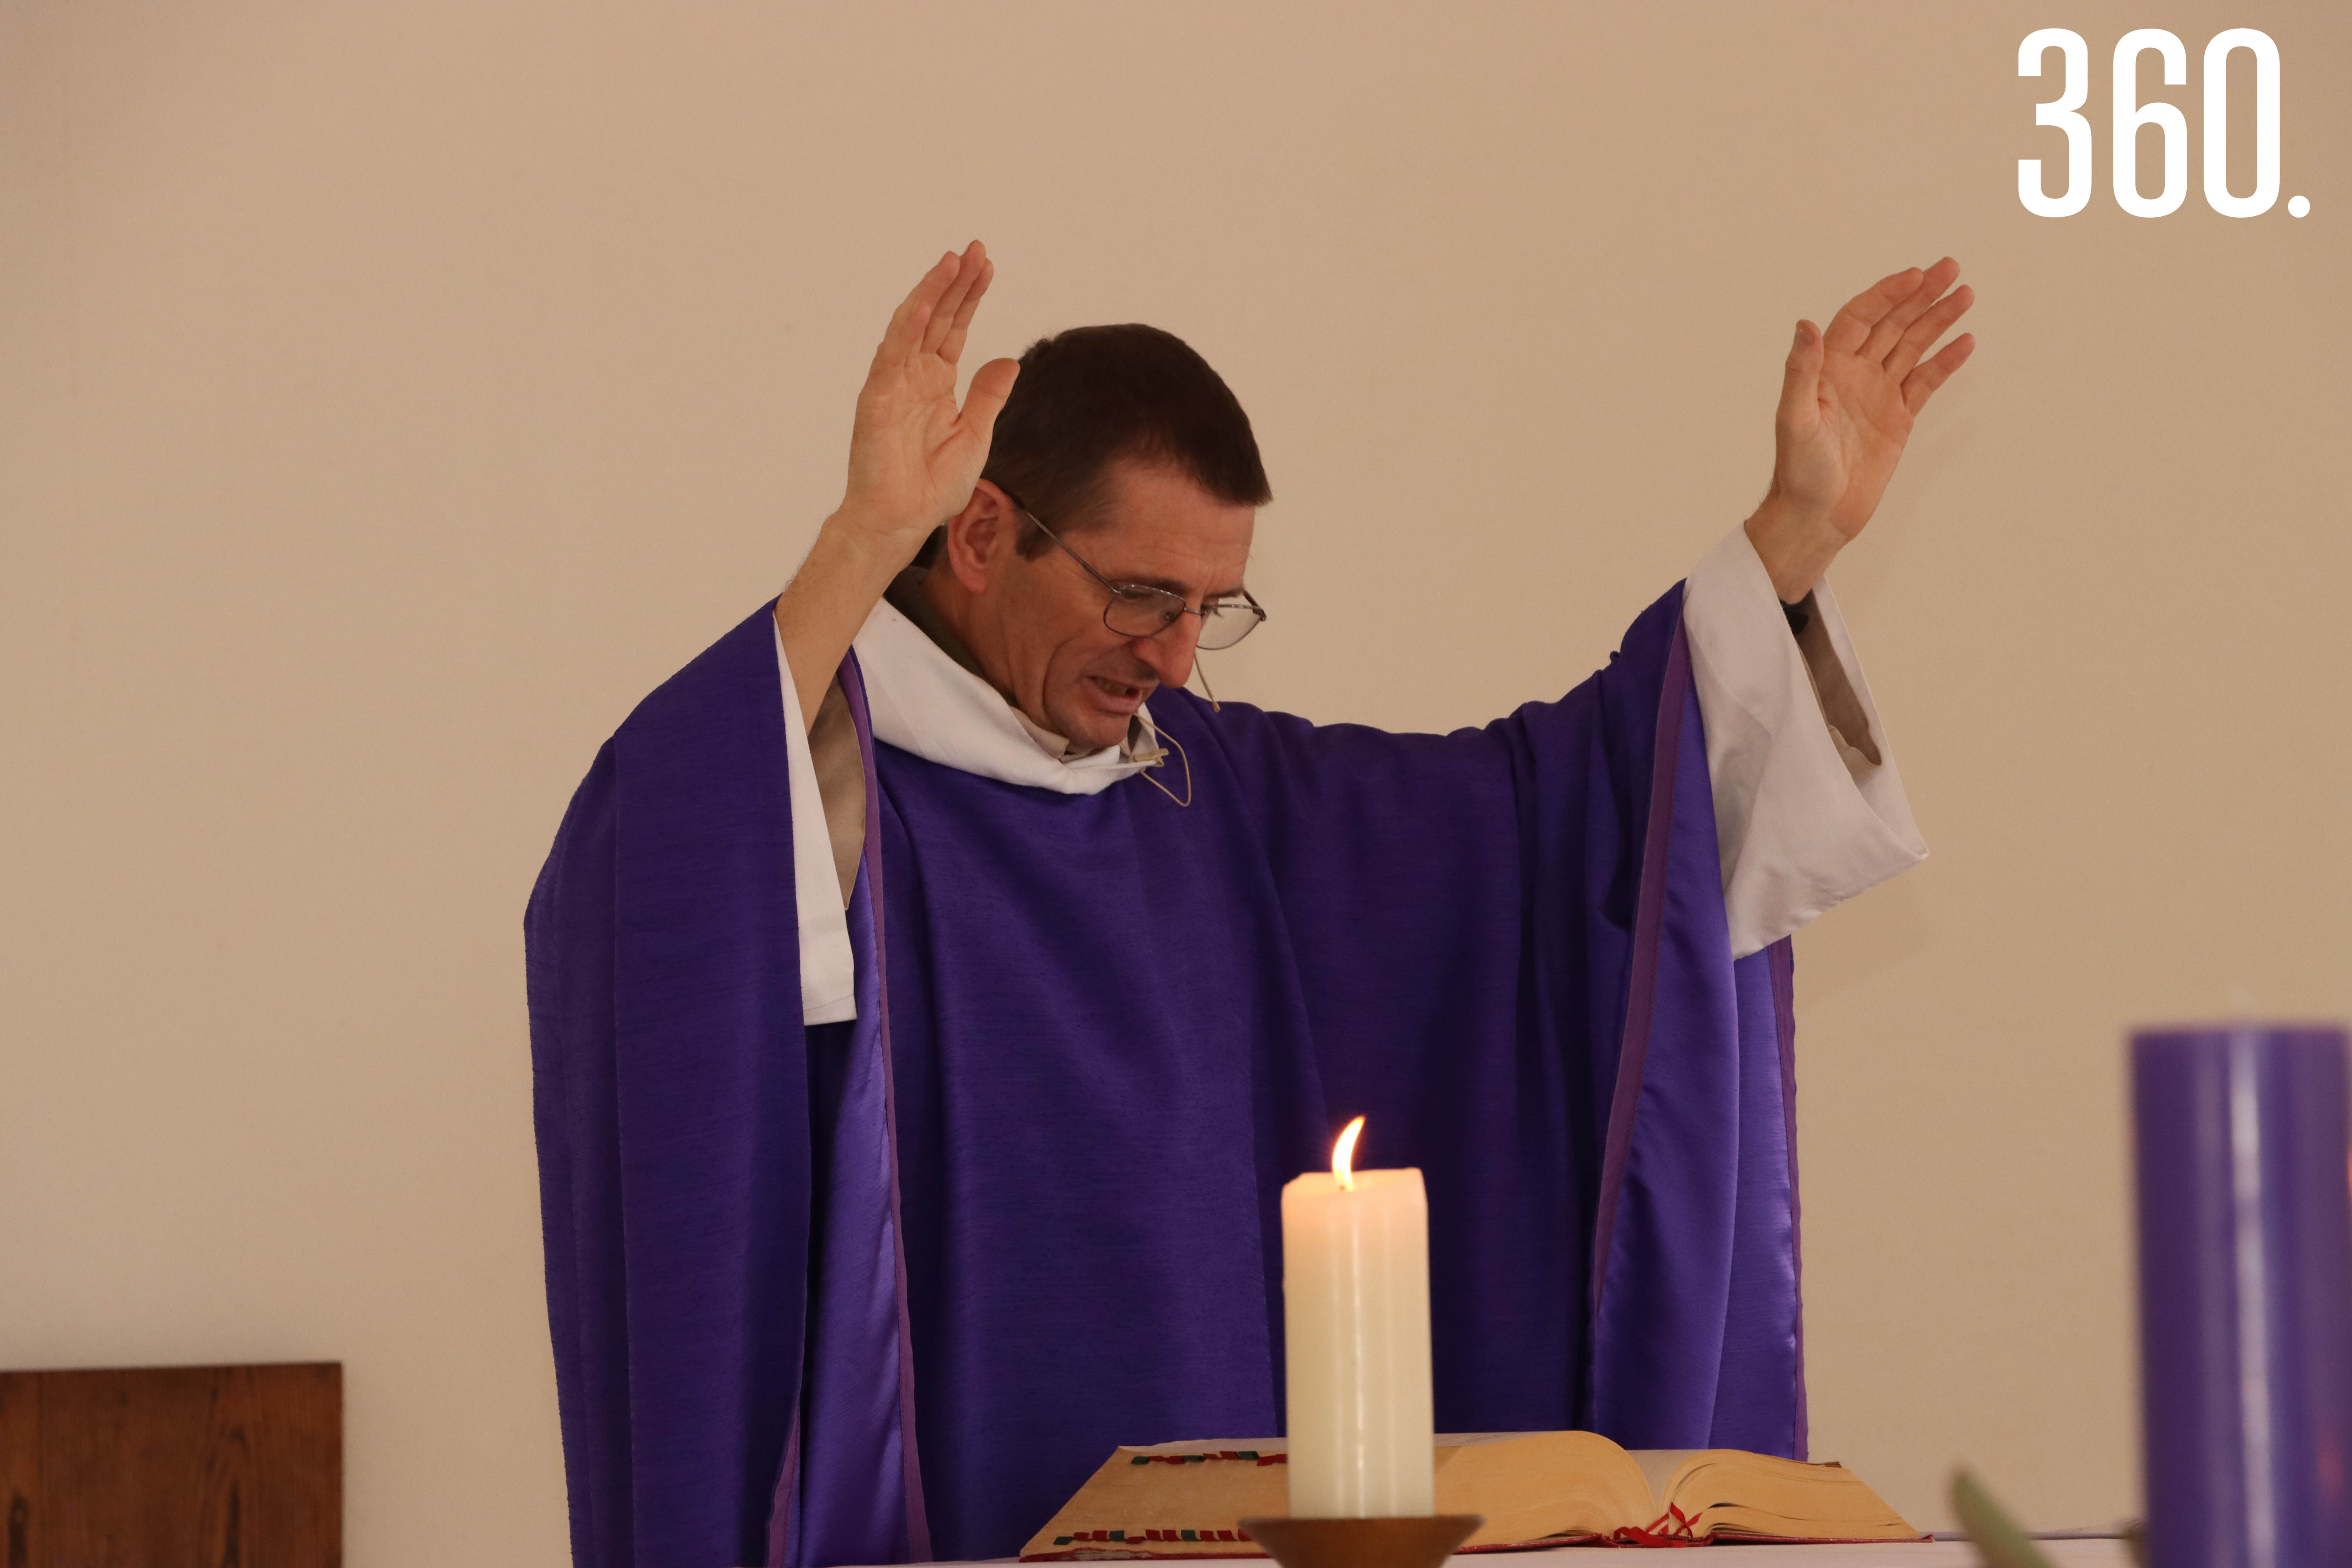 El padre Didier Marie Pierre Dugas, prior de la comunidad Verbum Spei, ofició la misa.